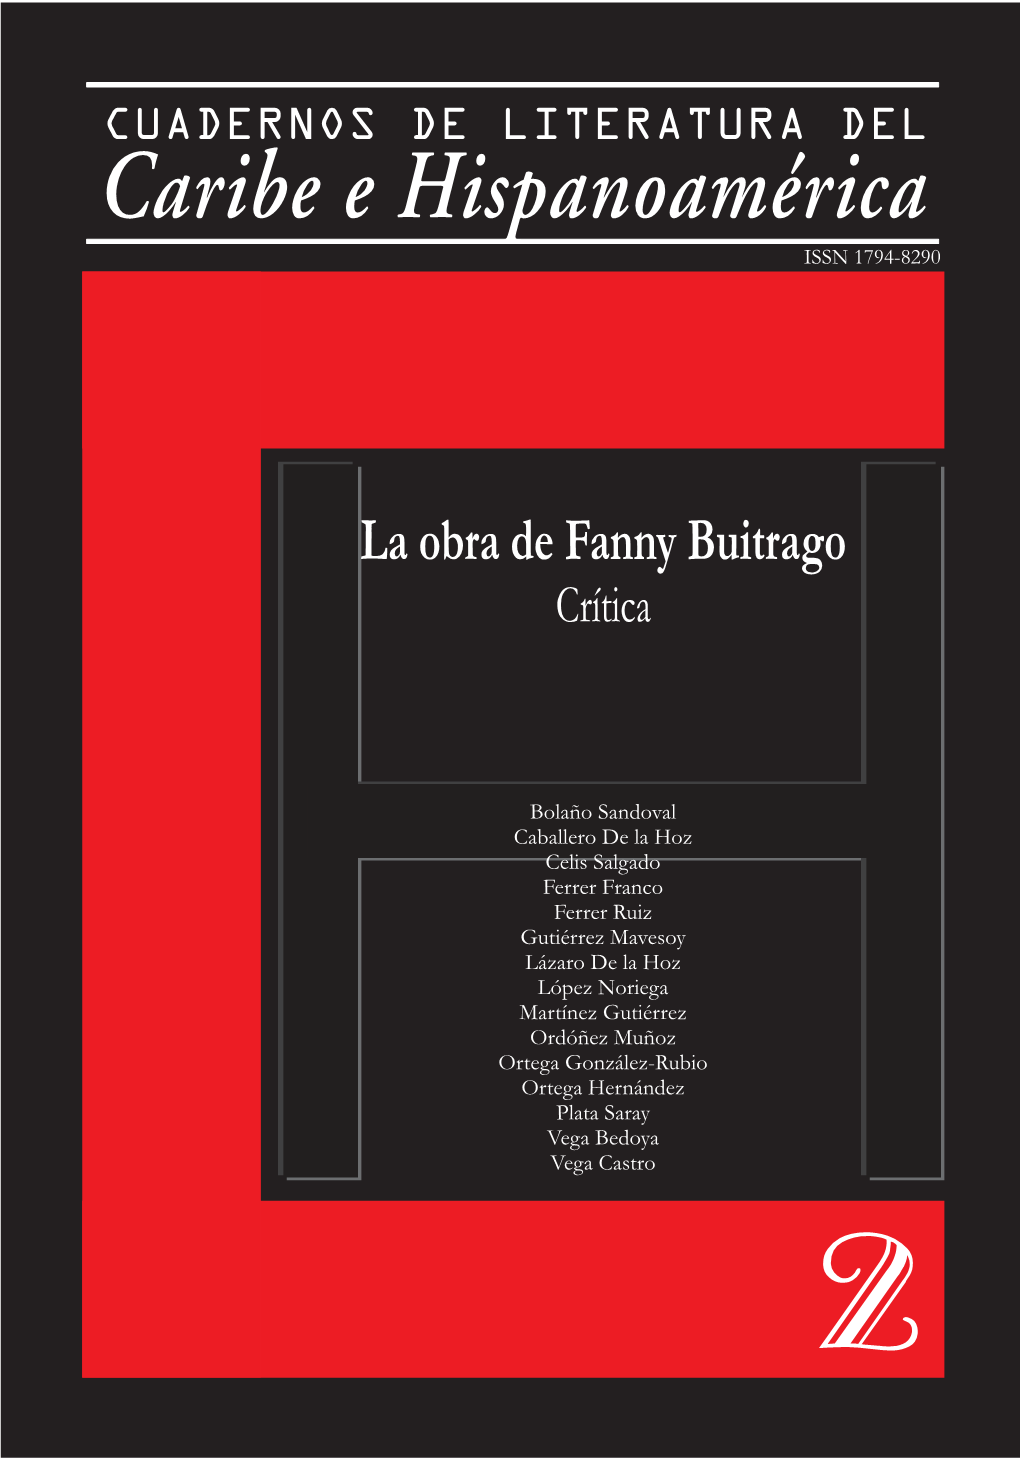 Fanny Buitrago Crítica